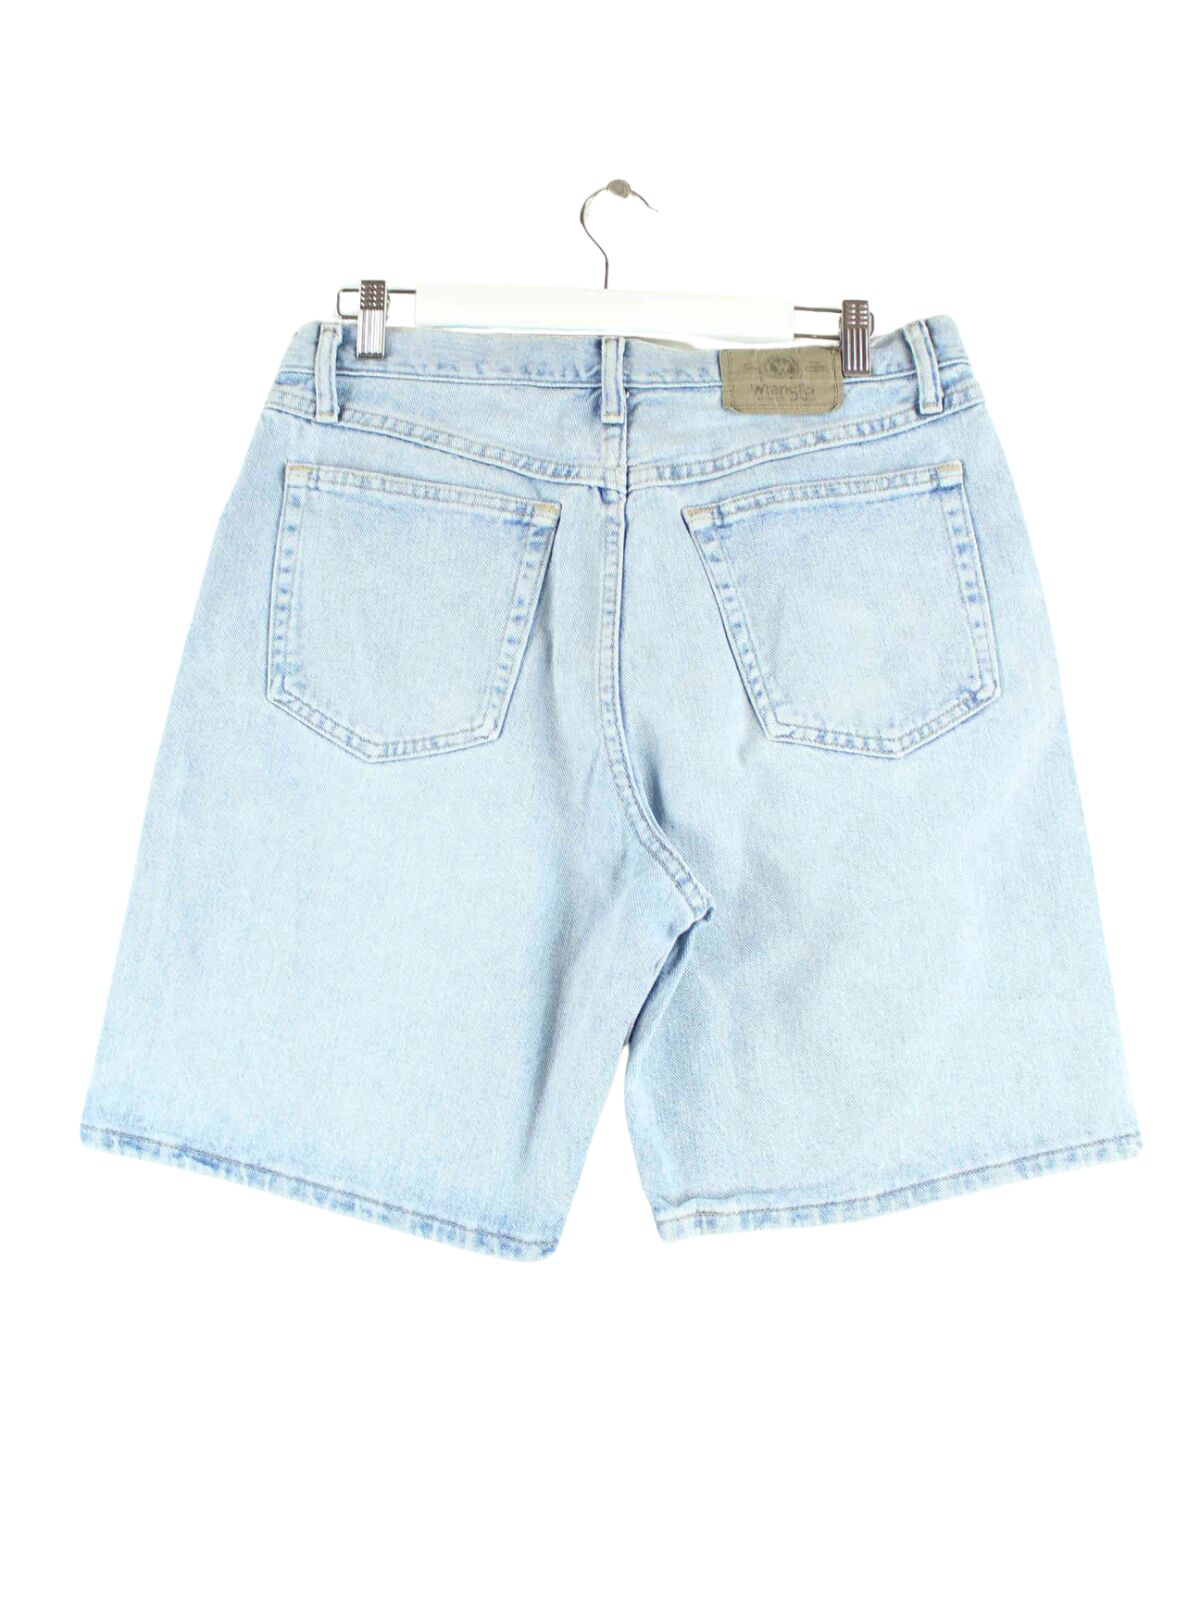 Wrangler Jorts / Jeans Shorts Blau W30 (back image)